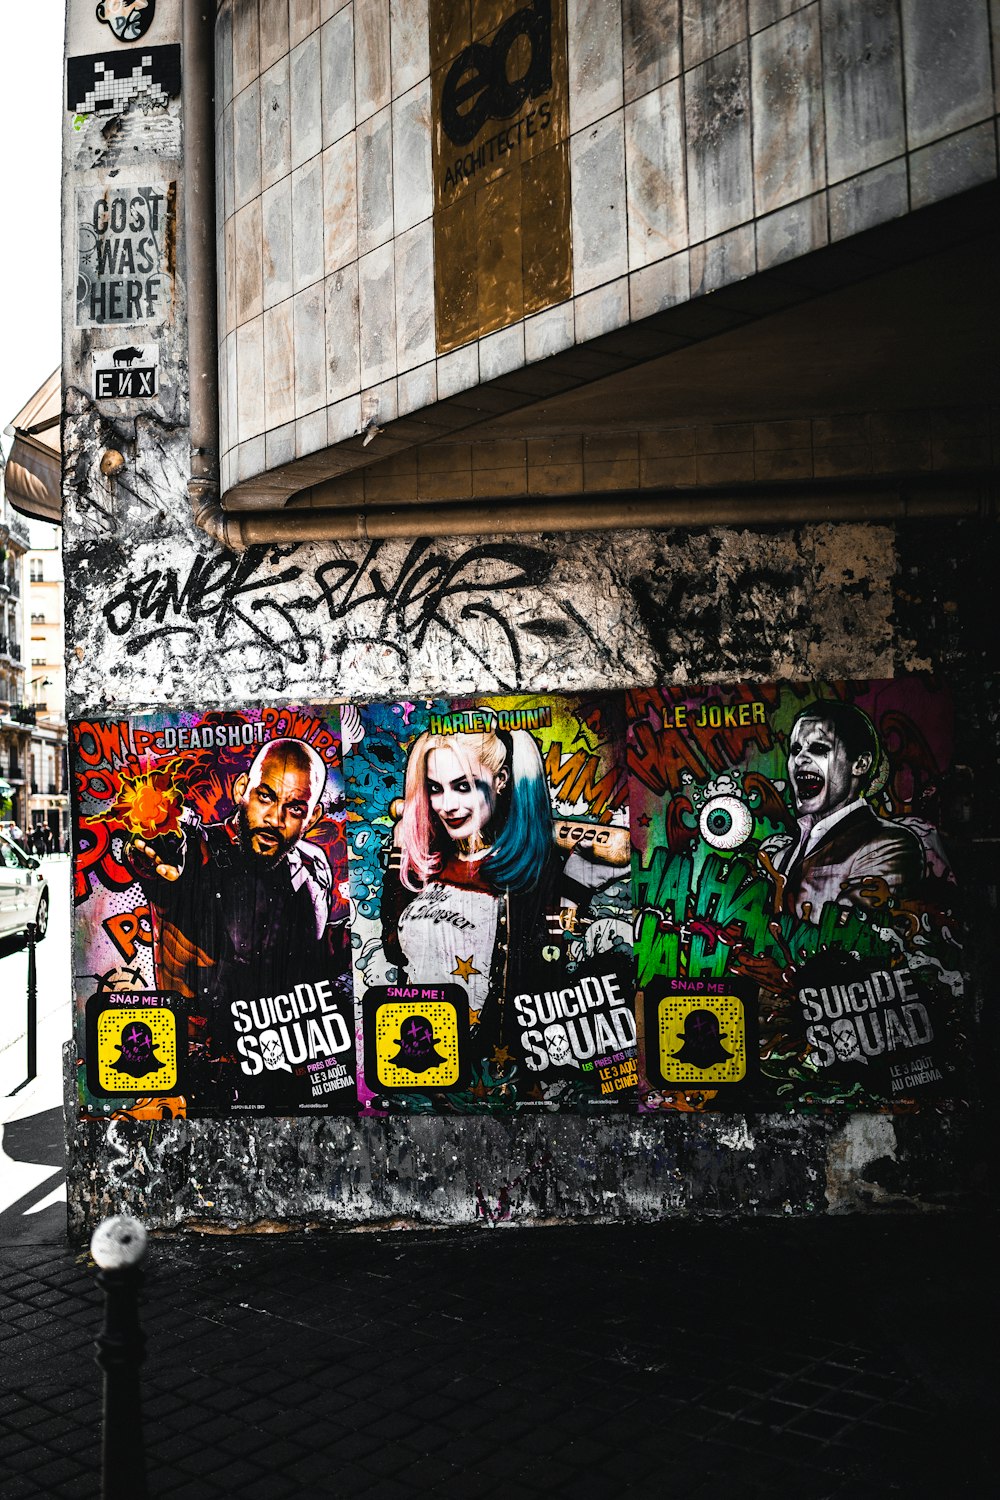 Suicide Squad wall graffiti